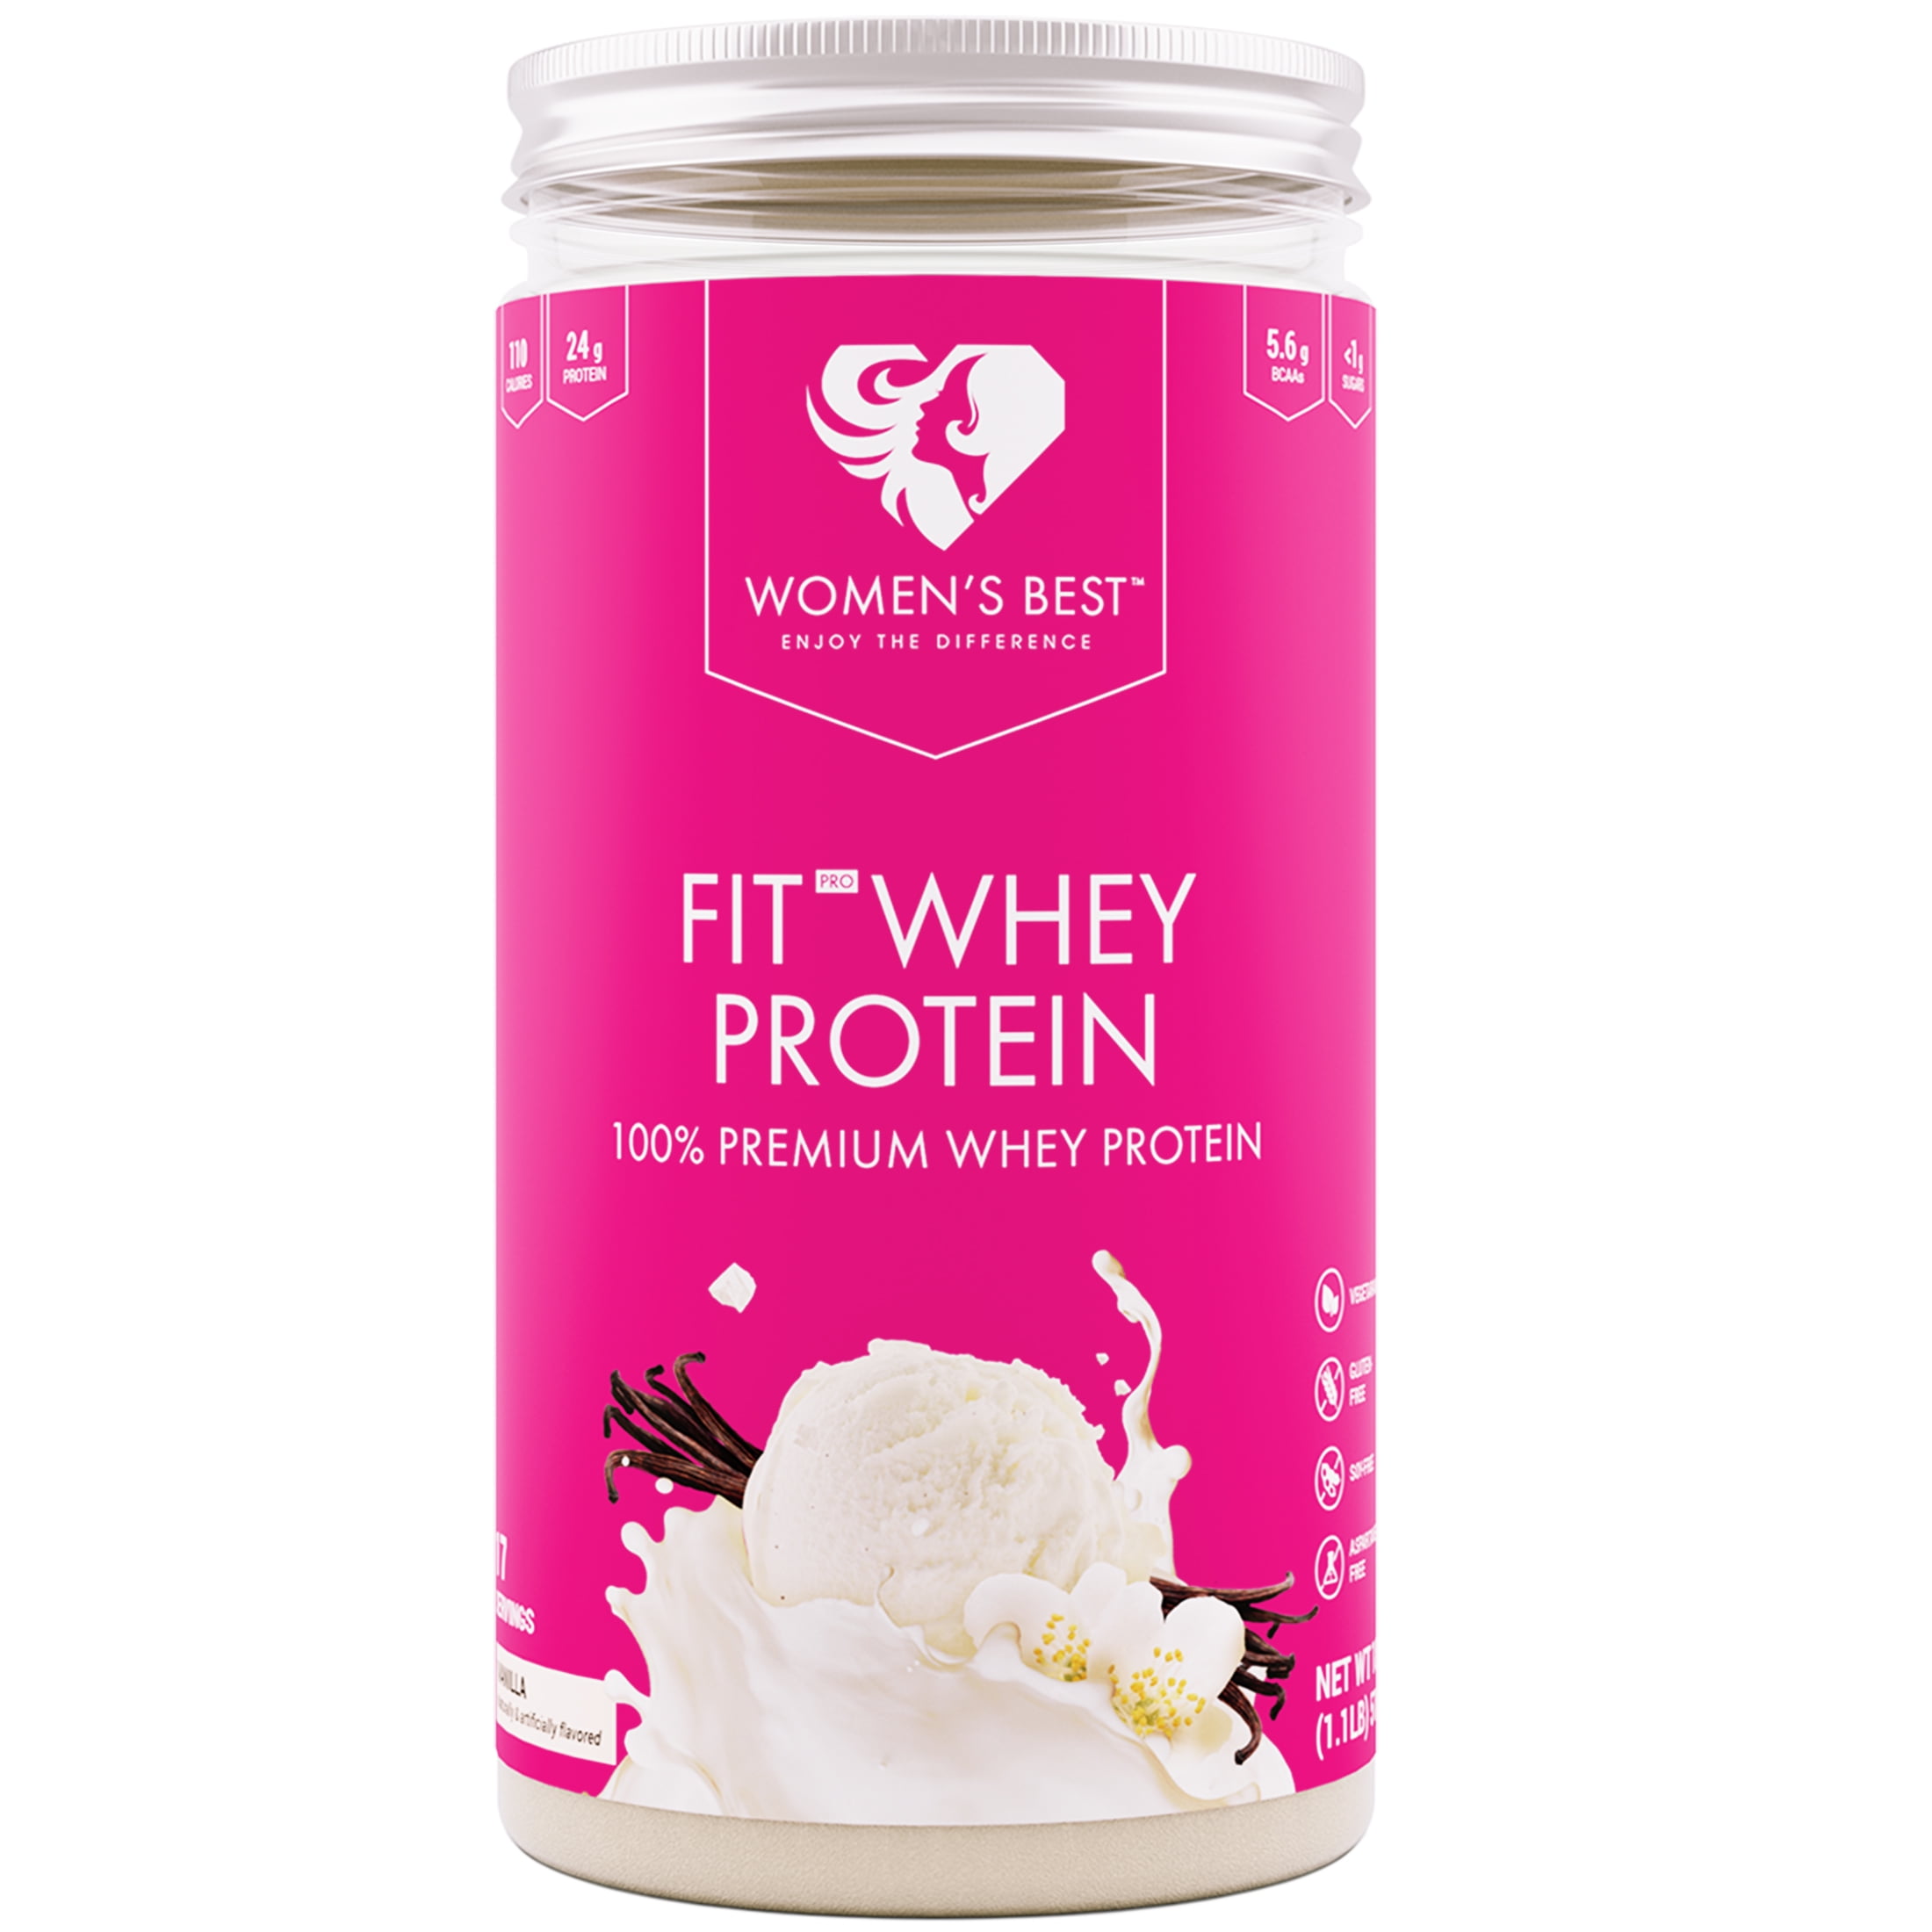 Women's Best Fit Pro Premium Whey Protein Powder, Vanilla, 24g Protein, 18 oz